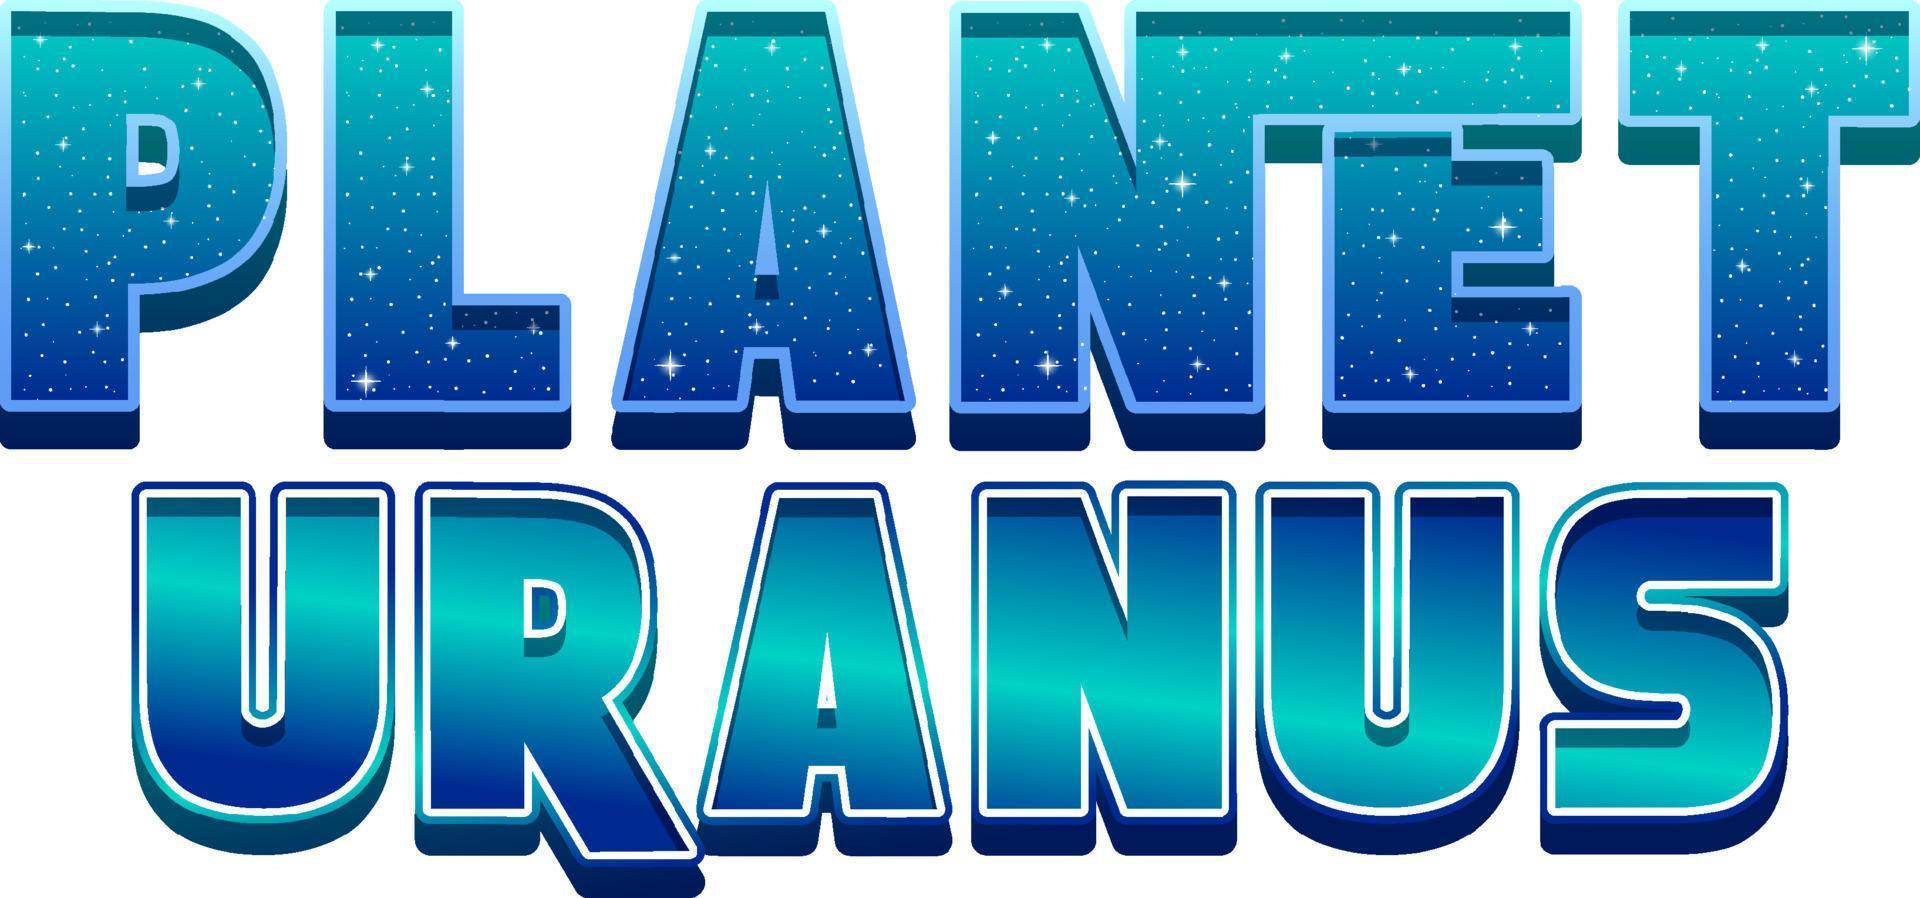 planeet uranus woord logo ontwerp vector